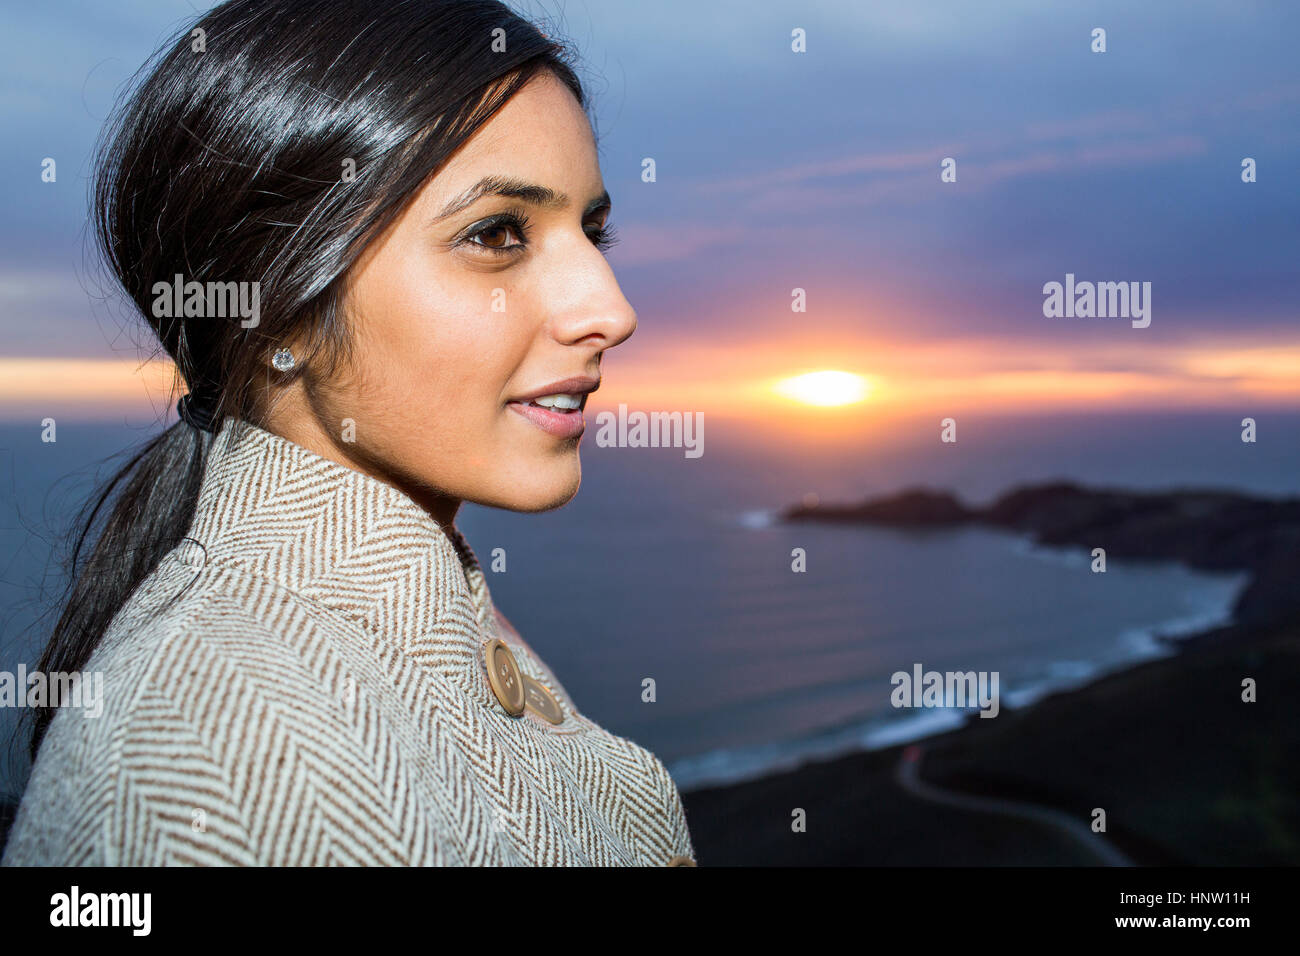 Portrait de femme indienne près de ocean at sunset Banque D'Images